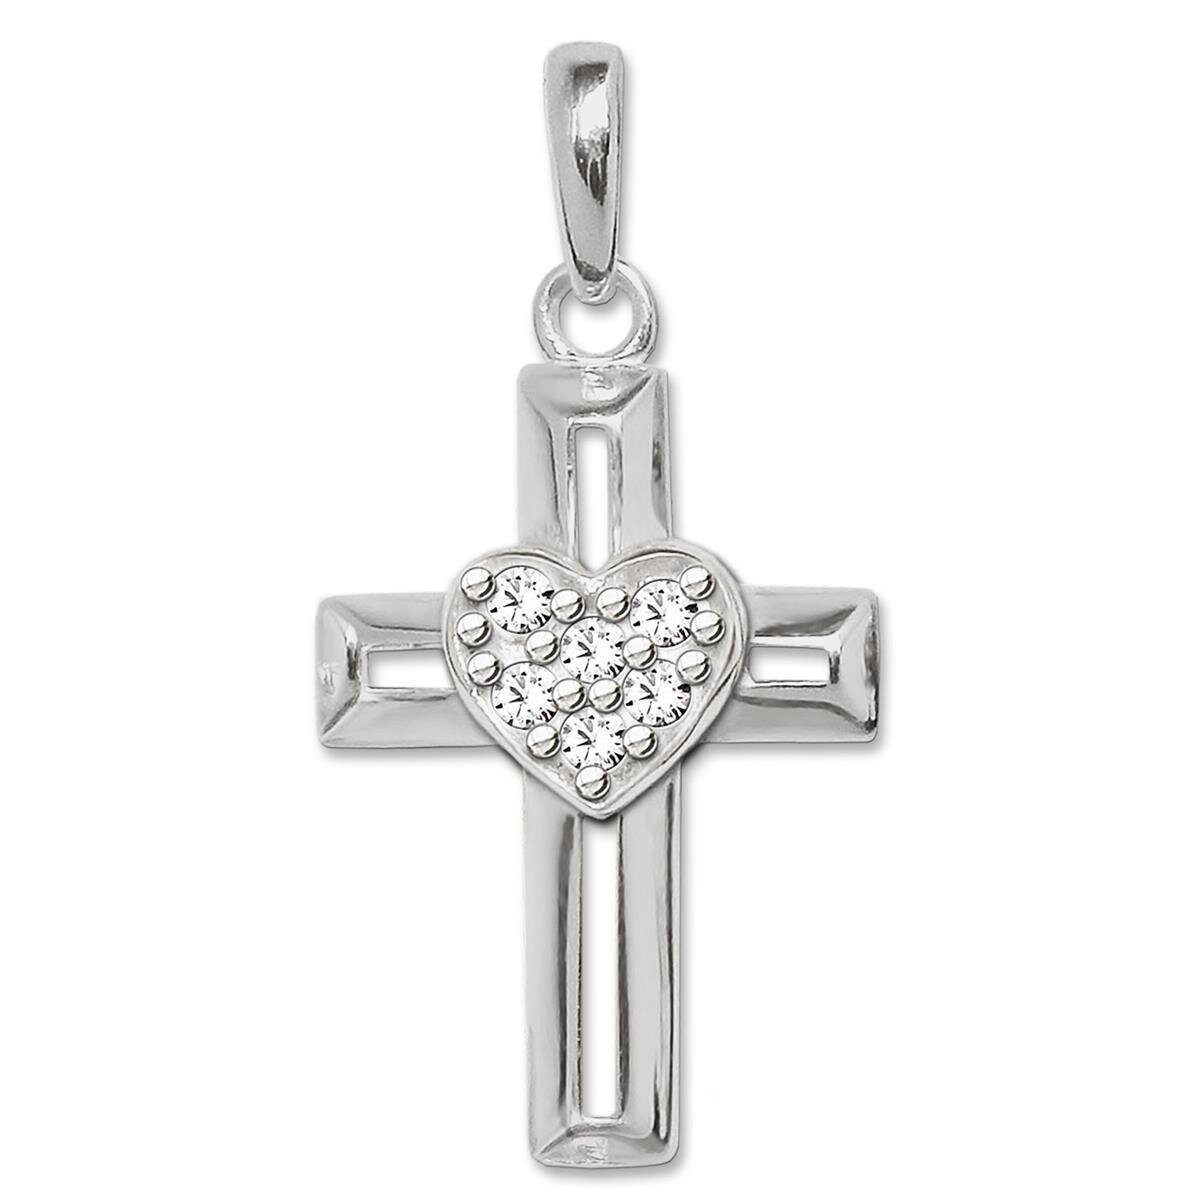 Silbernes Kreuz mit Herz mittig erhaben, viele weiße Zirkonias, Balken offene Form STERLING SILBER 925